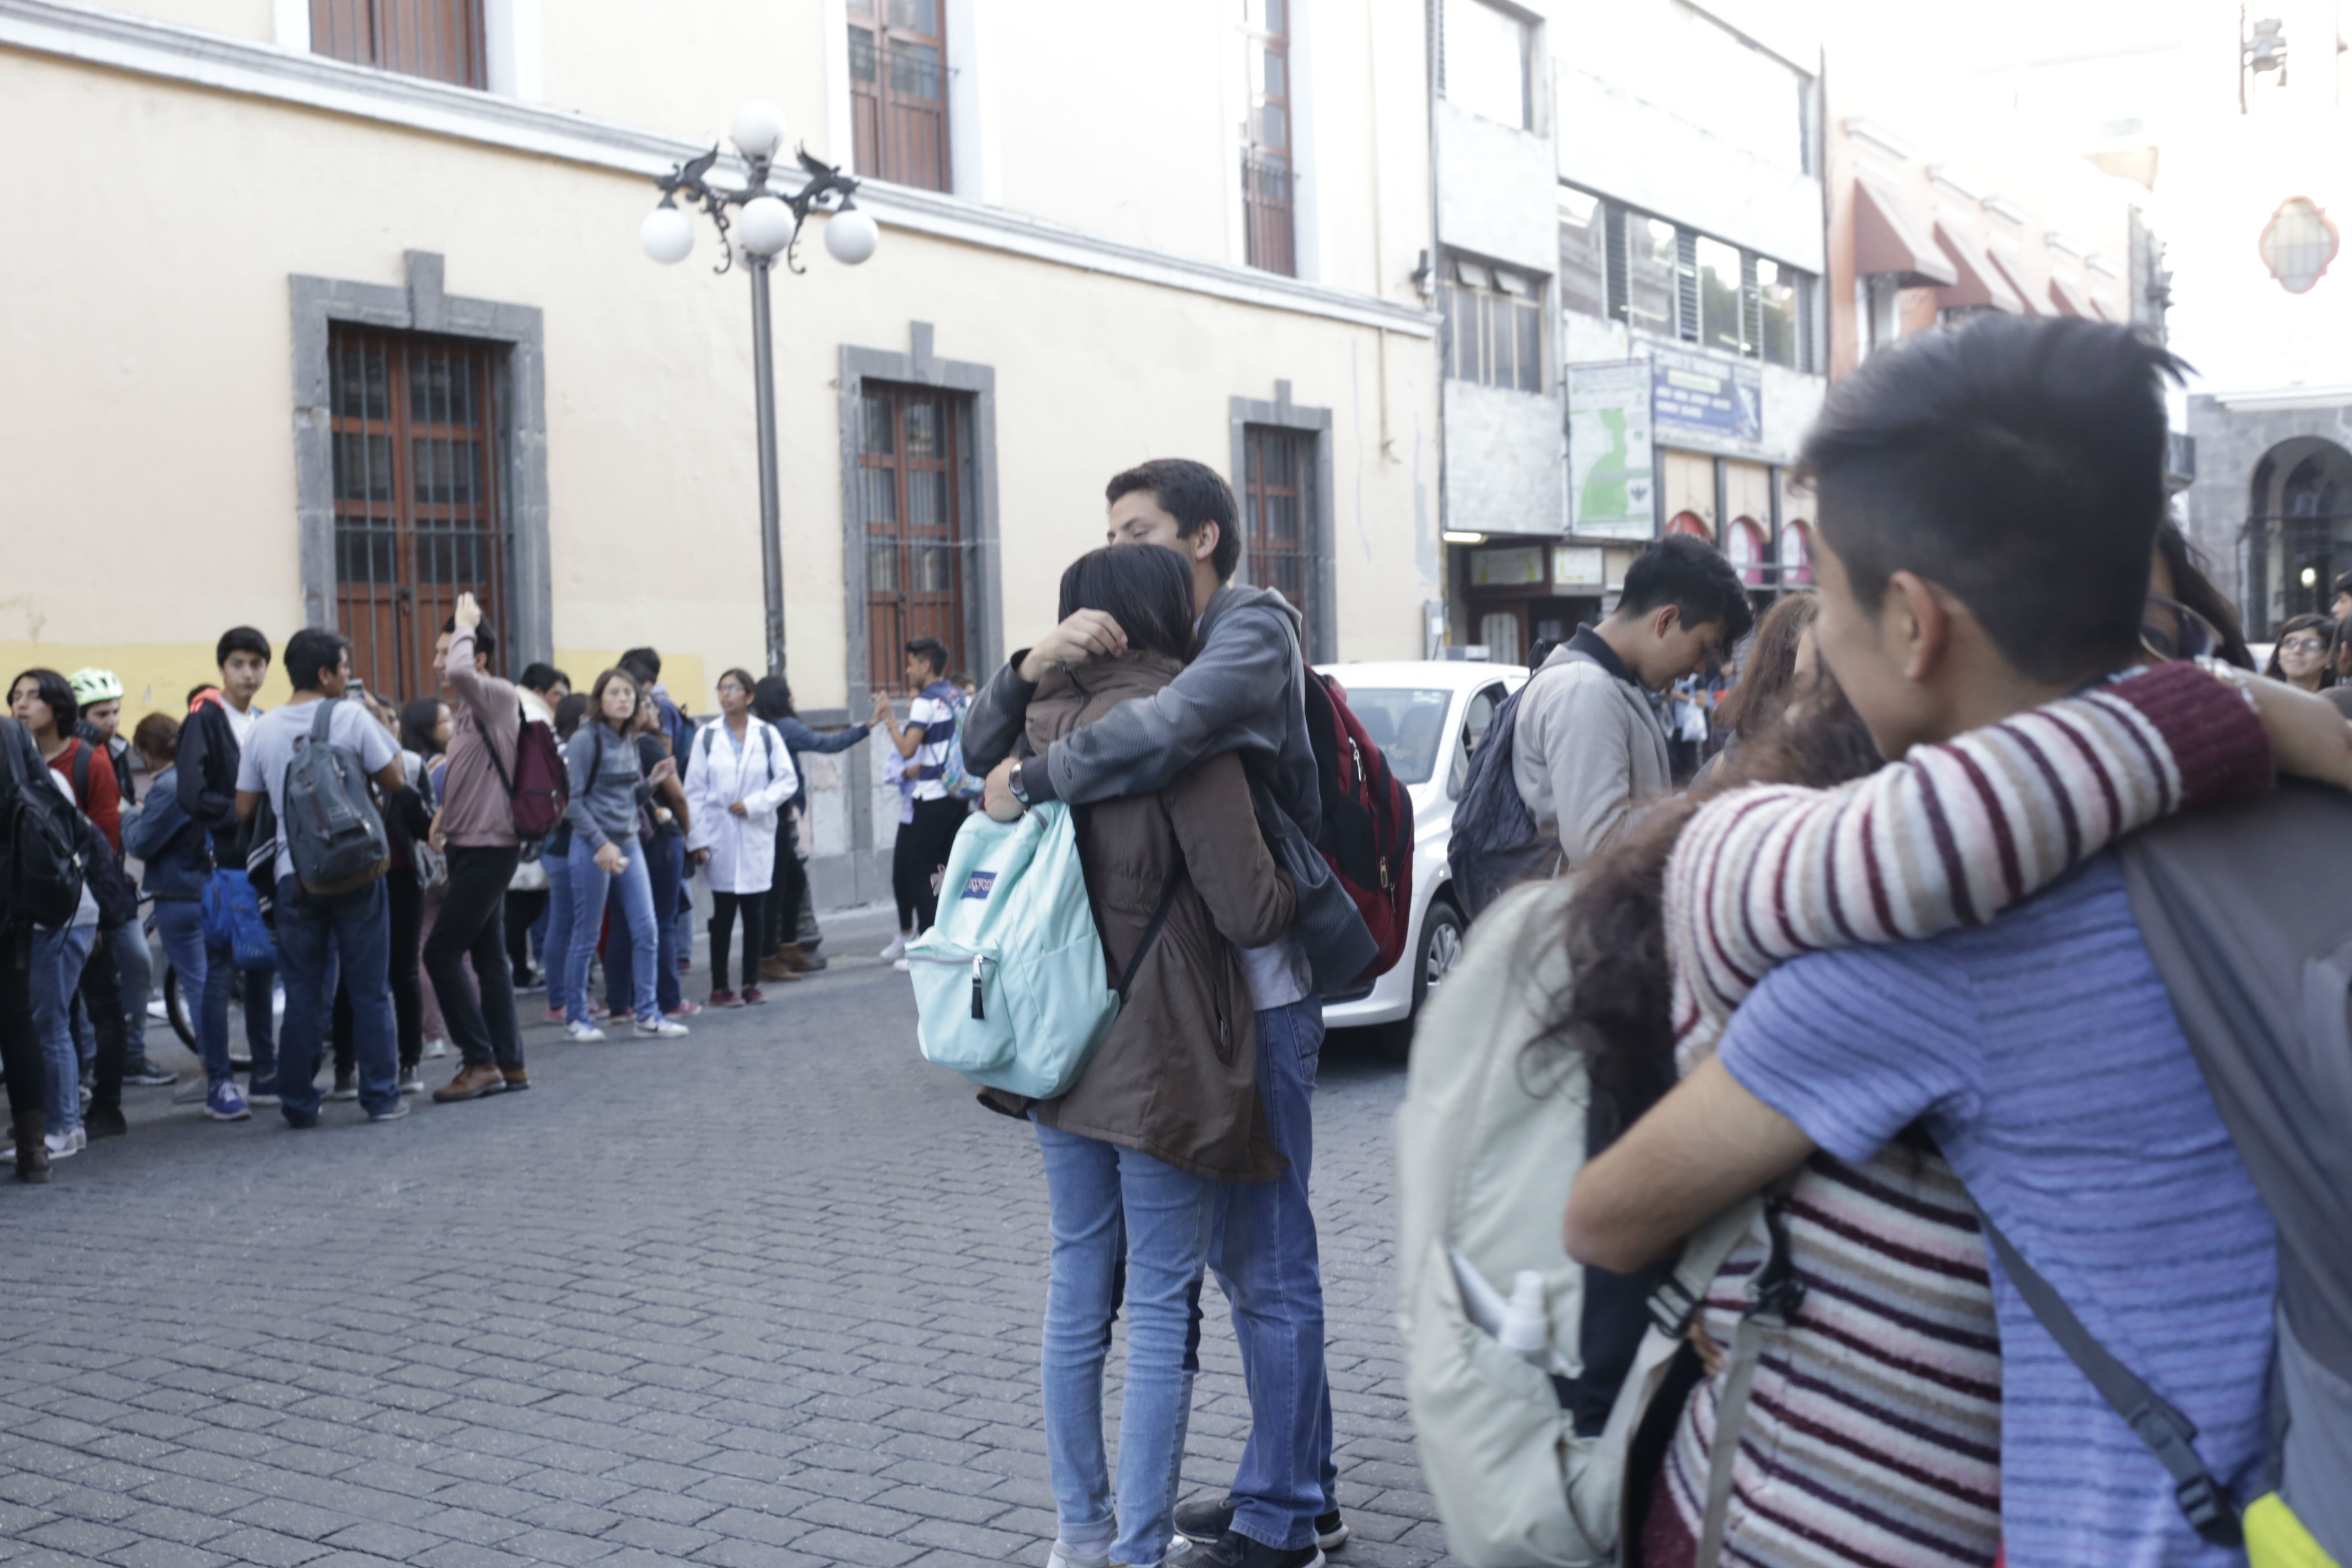 Temblor magnitud 7.2 se siente en el estado de Puebla